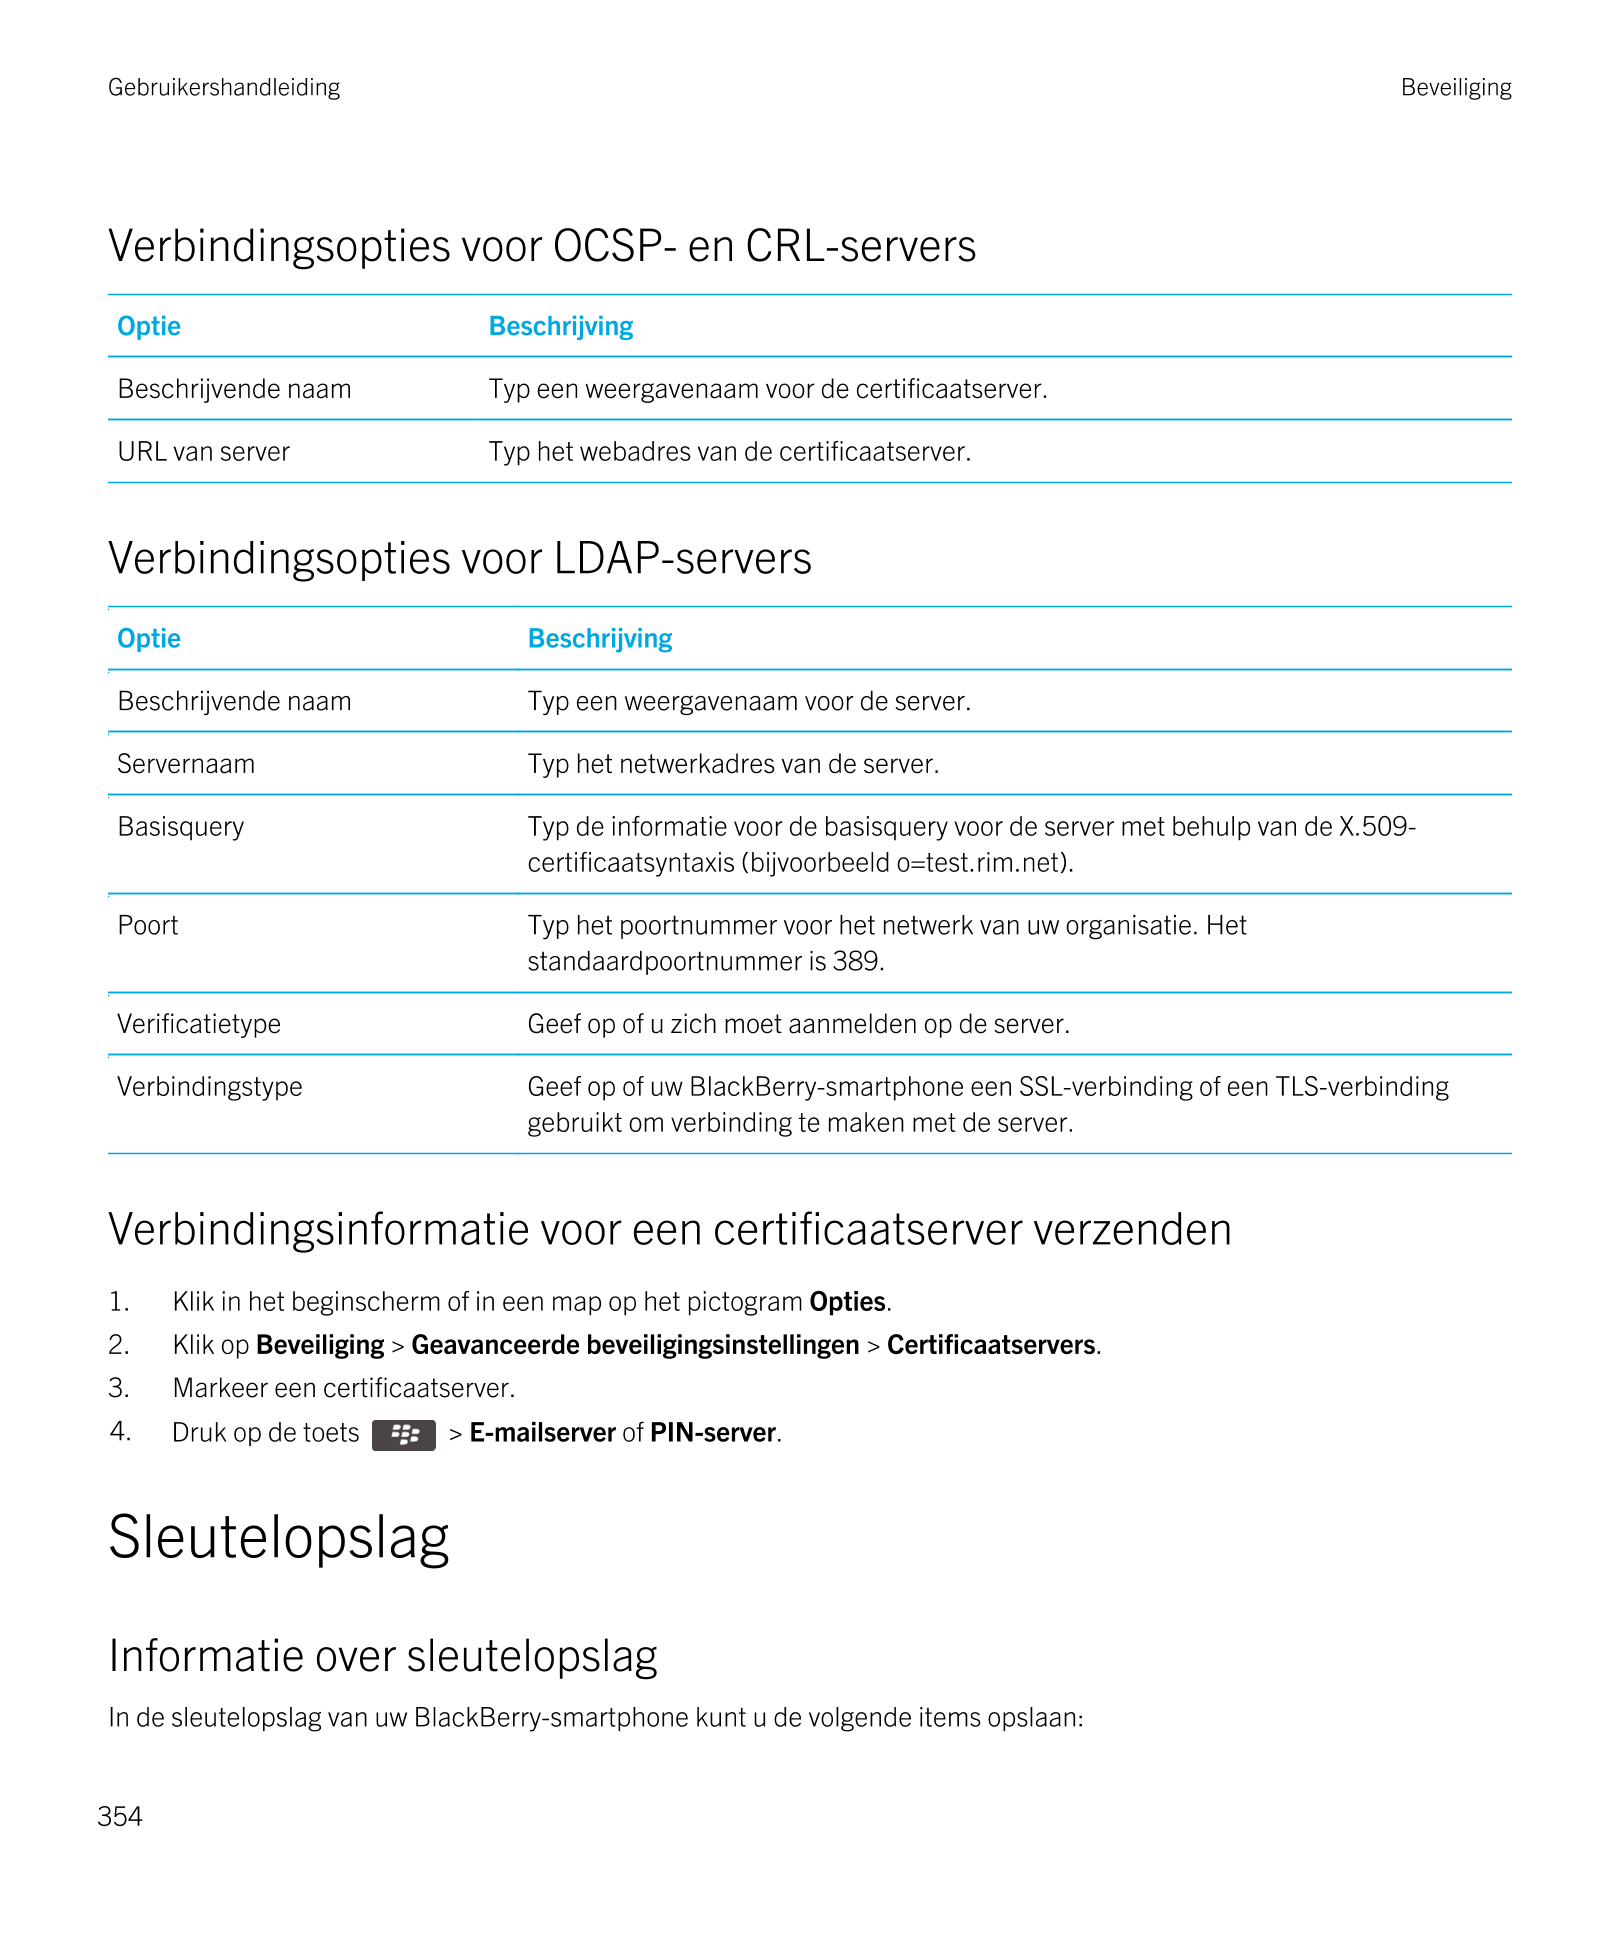 Gebruikershandleiding Beveiliging
Verbindingsopties voor OCSP- en CRL-servers
Optie Beschrijving
Beschrijvende naam Typ een weer